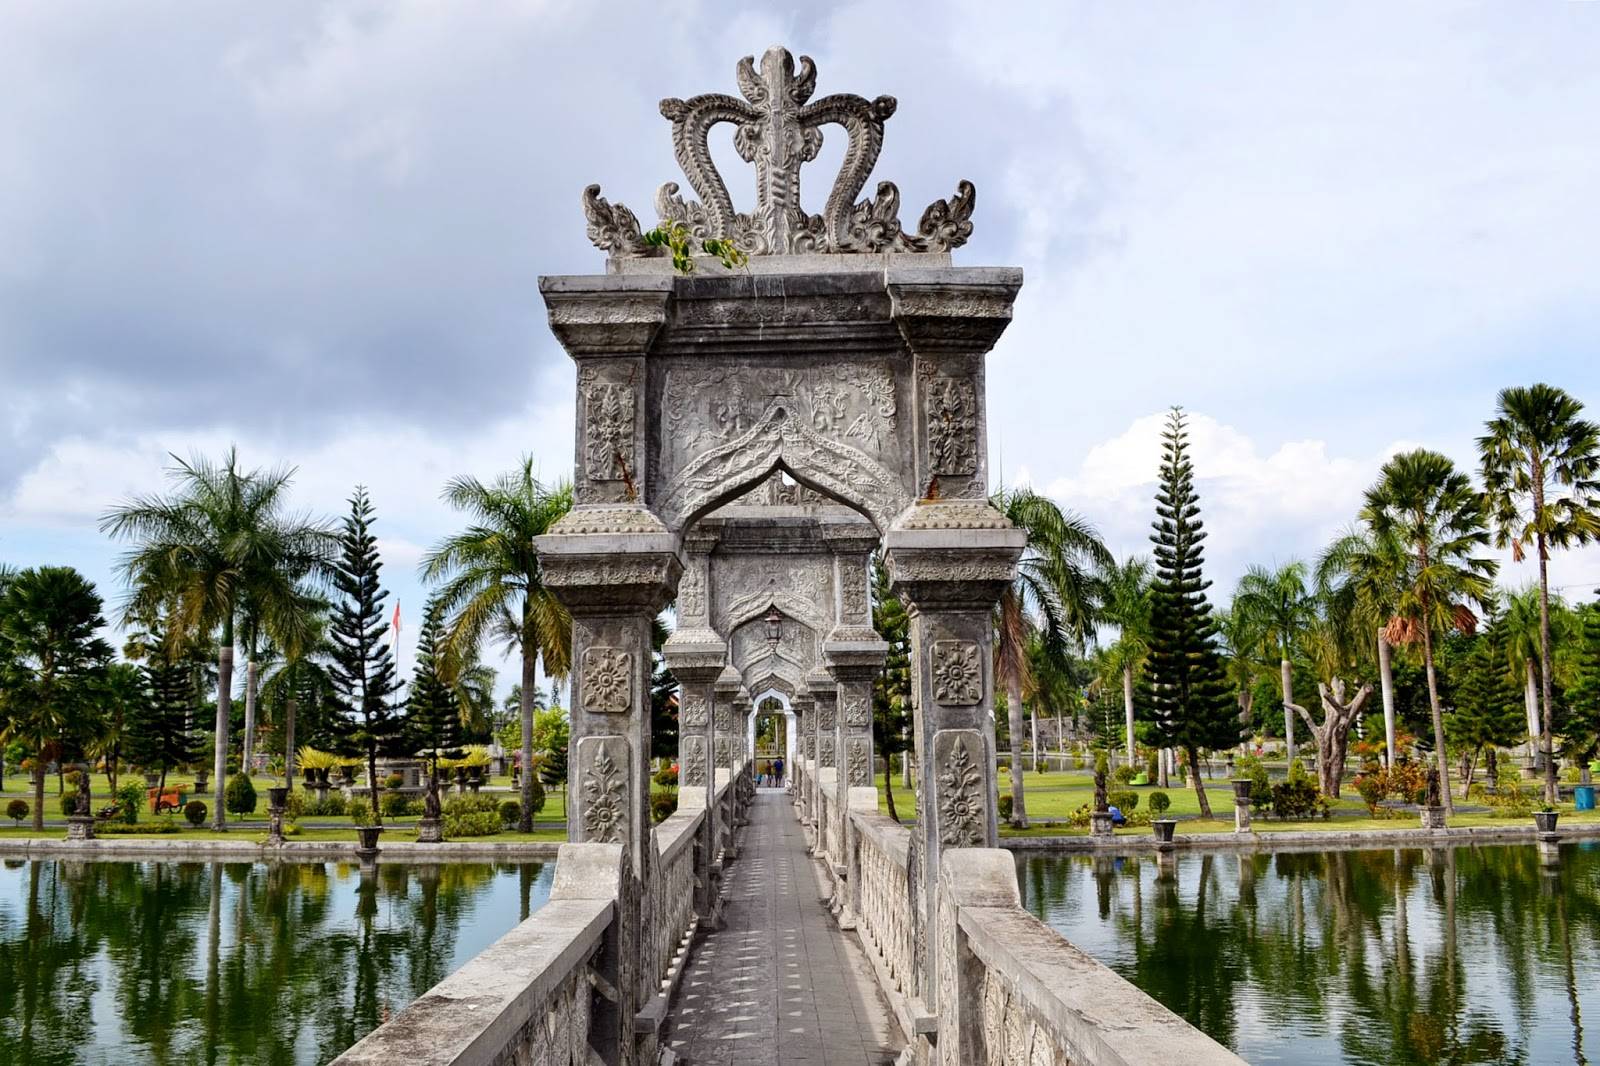 Отзыв: экскурсия в водный дворец tirta gangga (индонезия, бали) - воды ганга достигли острова, а вулкан агунг уничтожил королевские сады. водные дворцы бали водный дворец